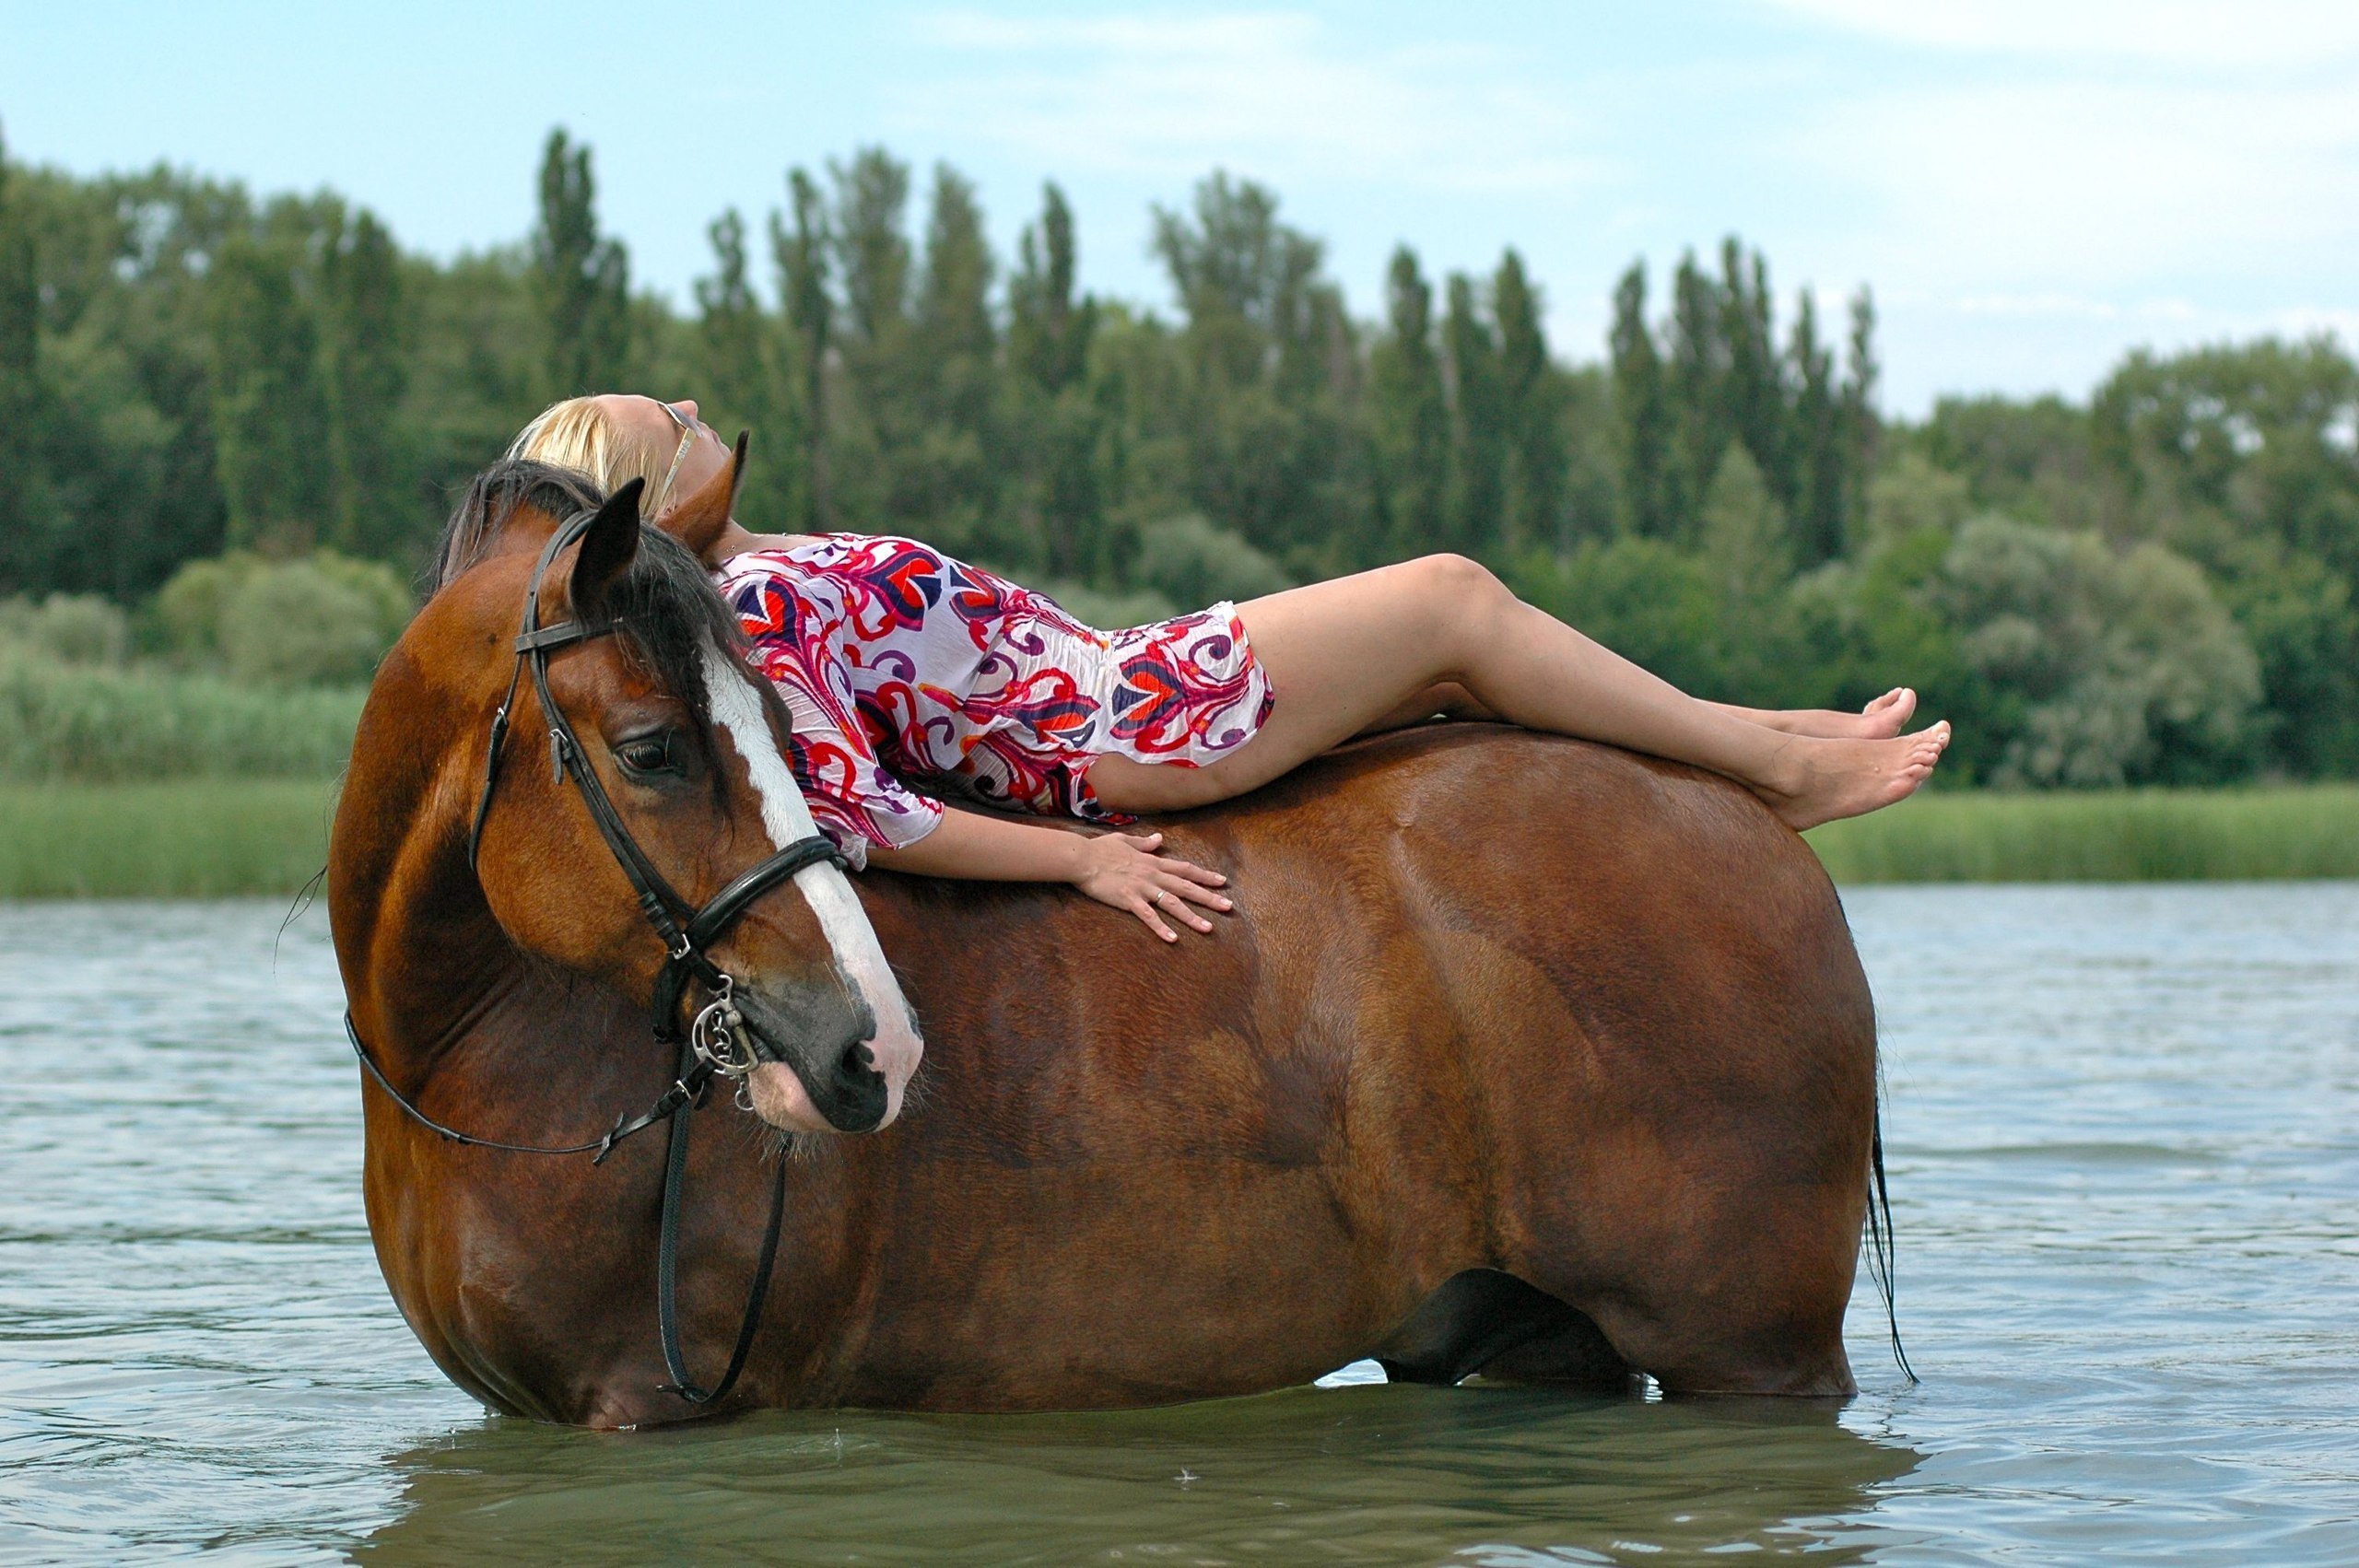 Вот она. Юрасова Мария Владимировна. Женщина на лошади. Баба лошадь. Девка кобыла.